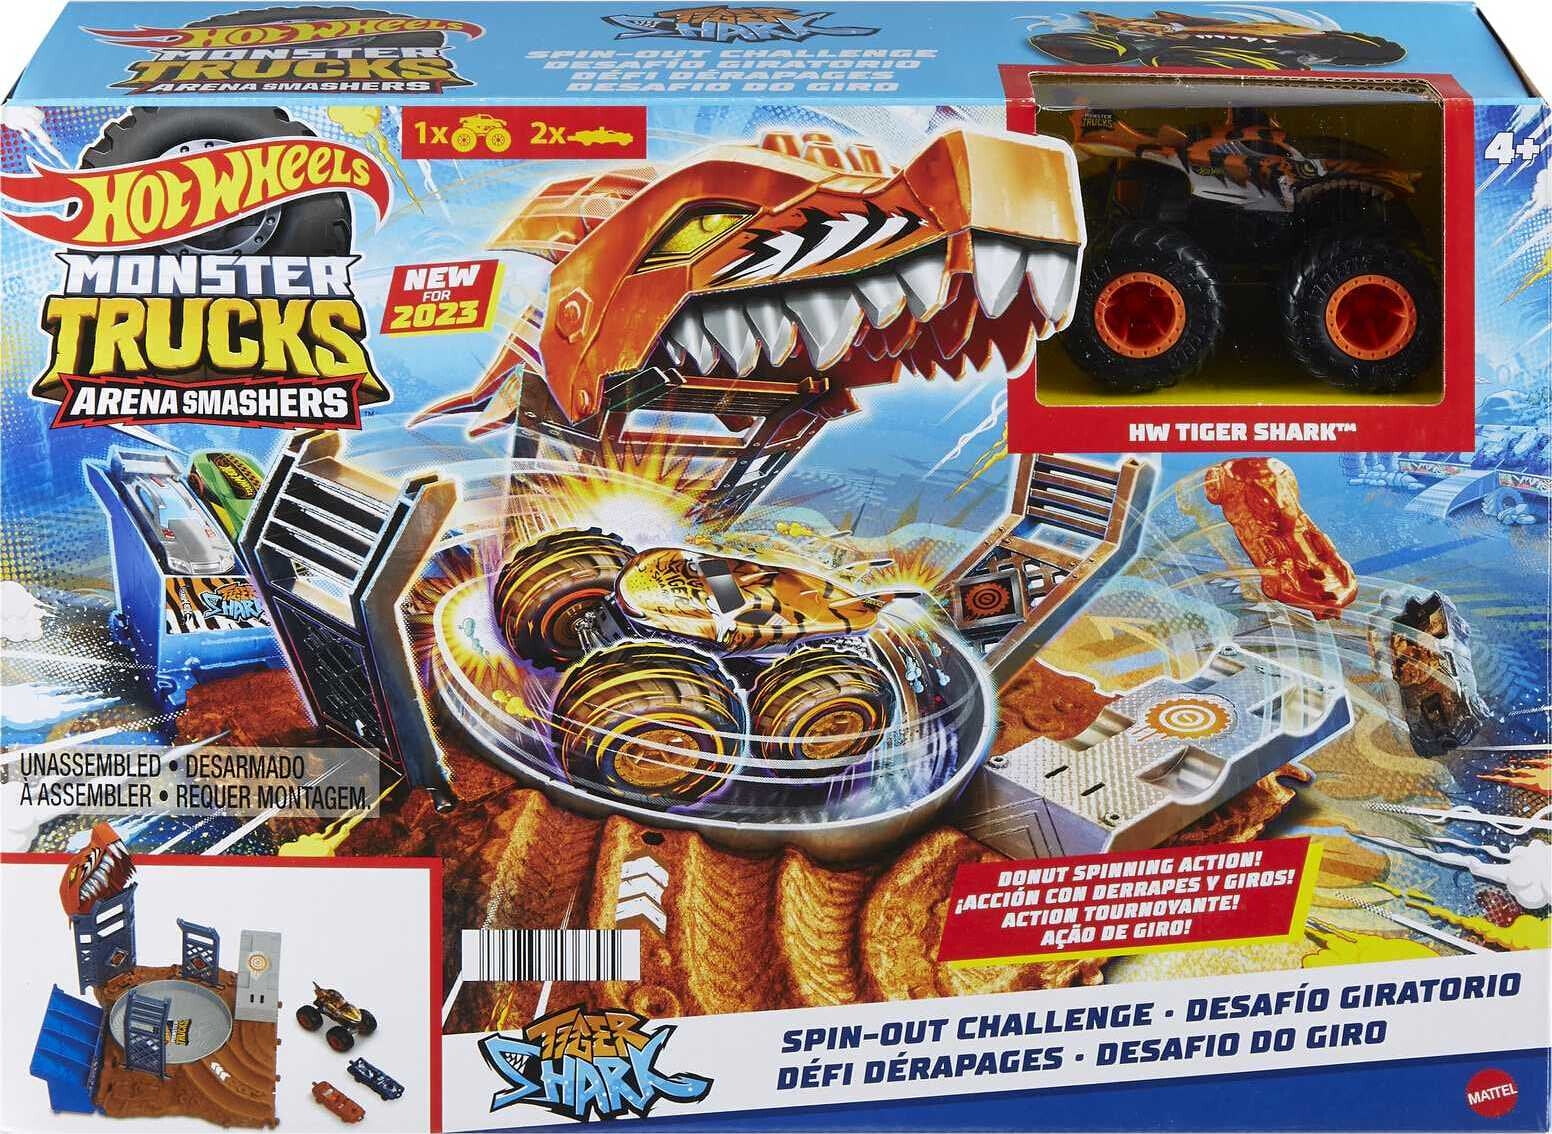 Carrinho de Brinquedo Hot Wheels  Lister - Carro Monster Truck - 1:64 -  Shark Wreak - Ref 22/75 3/7 - 1un - Hot Wheels - Mattel - Hot Wheels